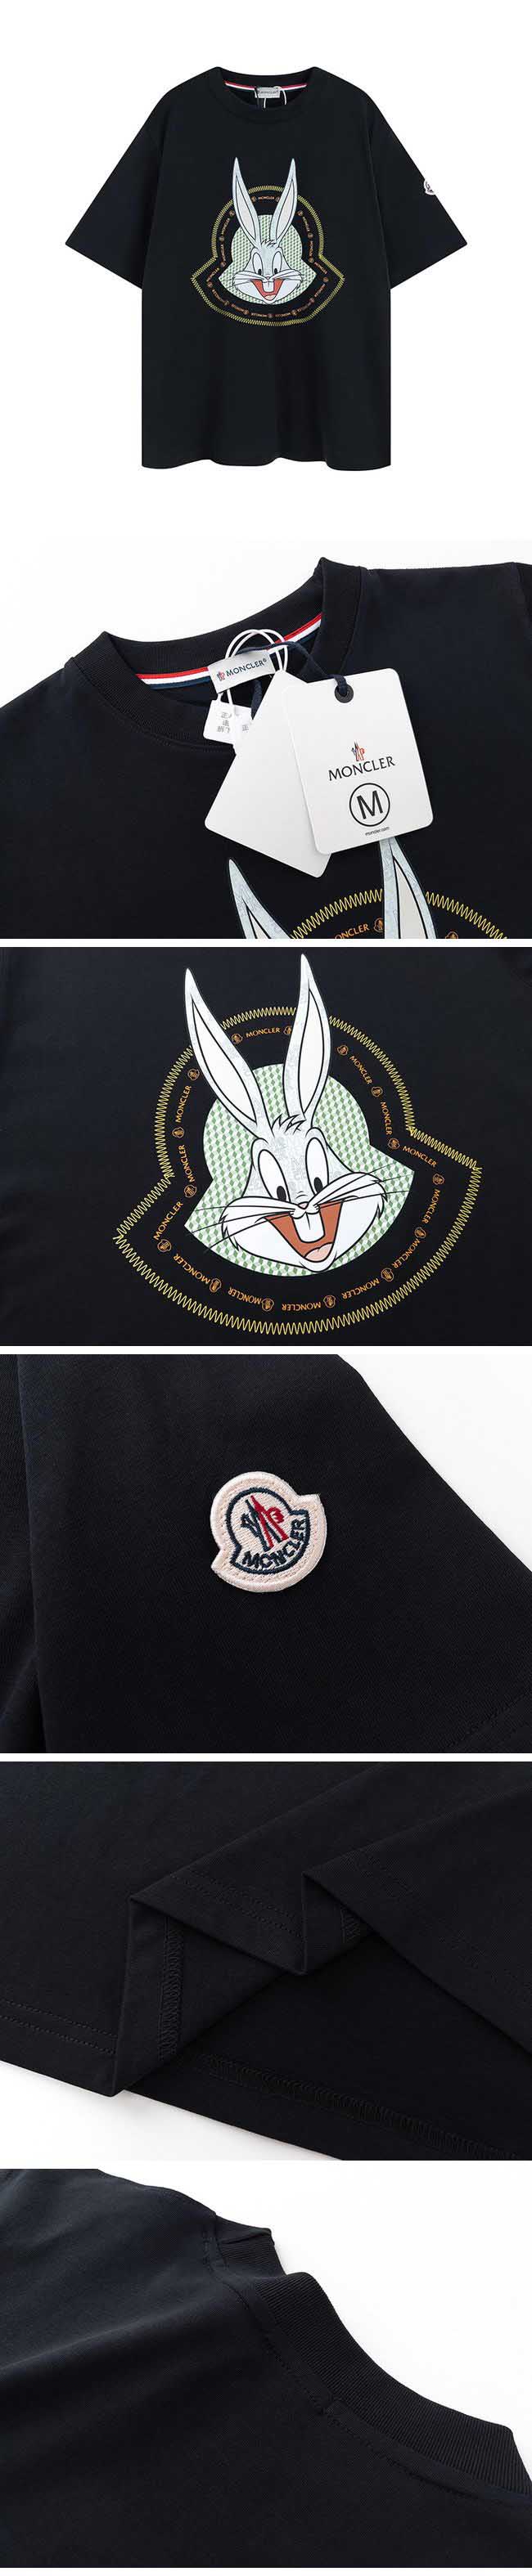 Moncler x Bugs Bunny Print Tee モンクレール x バッグス バニー プリント Tシャツ ブラック